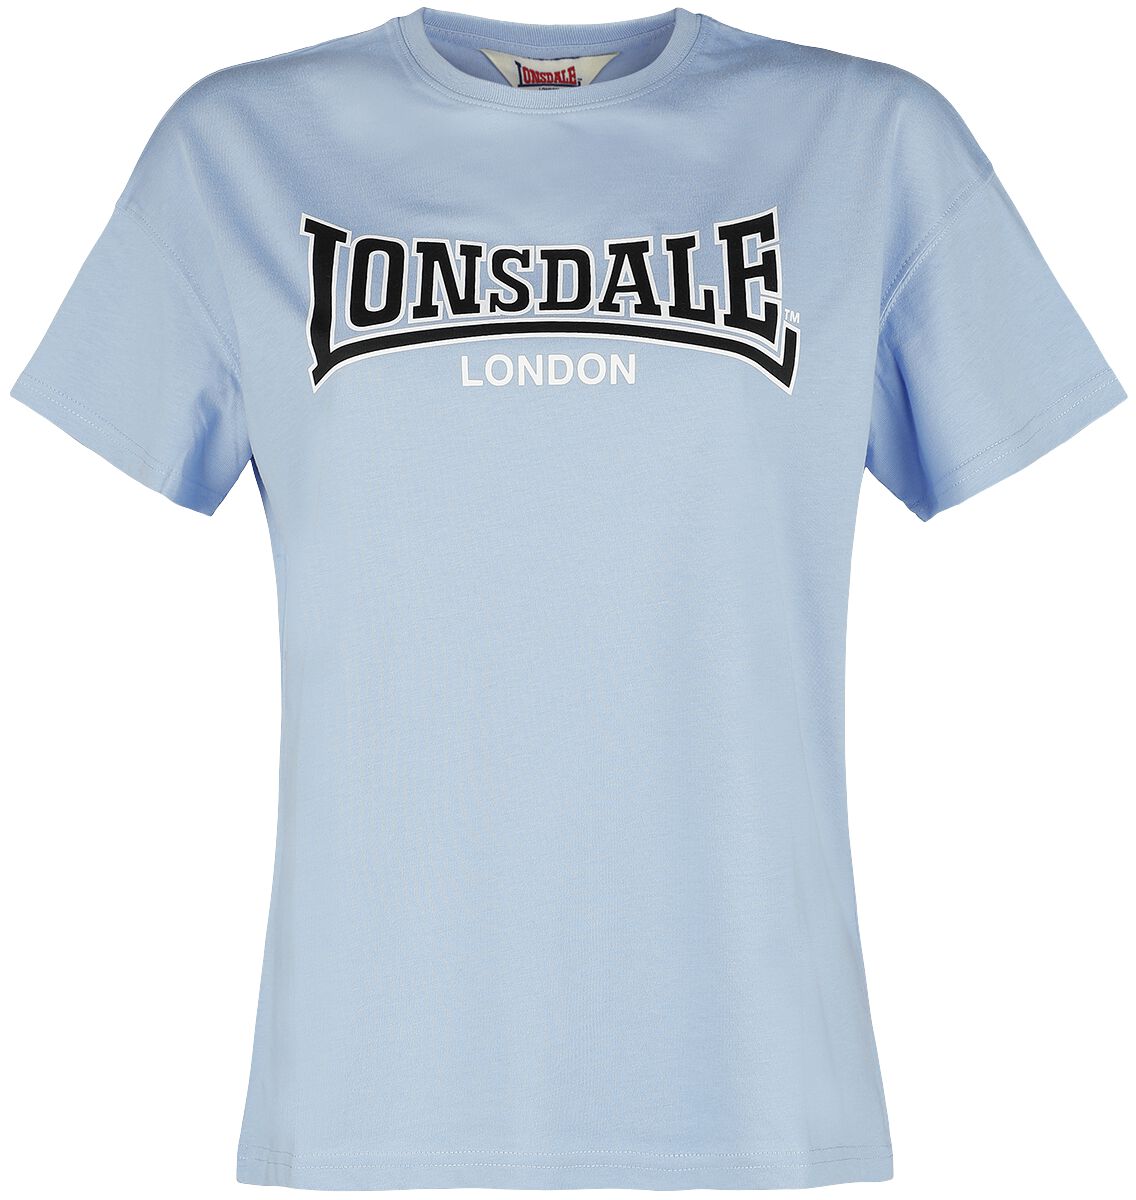 Lonsdale London OUSDALE T-Shirt light blue